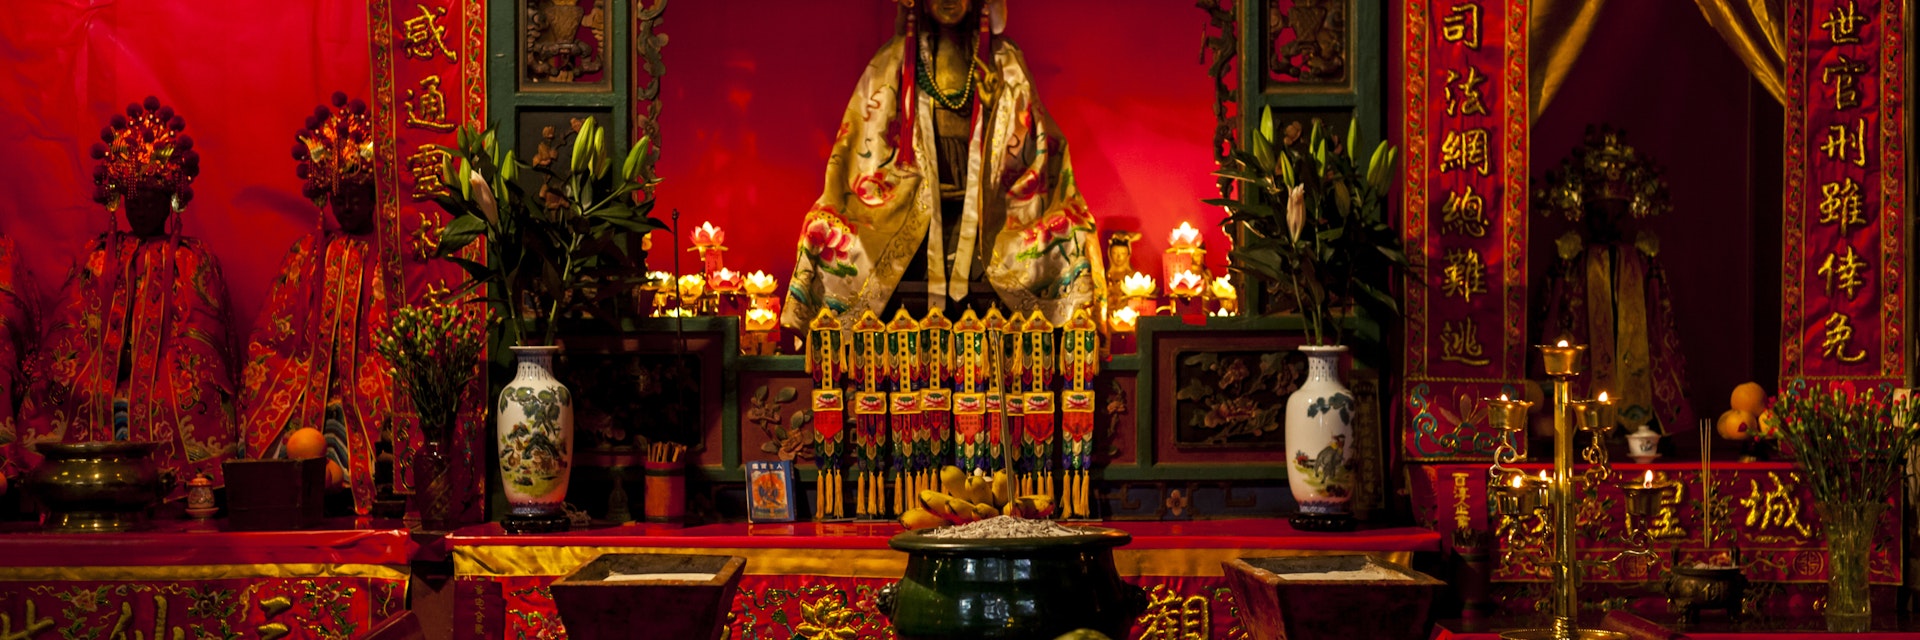 Interior of Pak Tai Temple